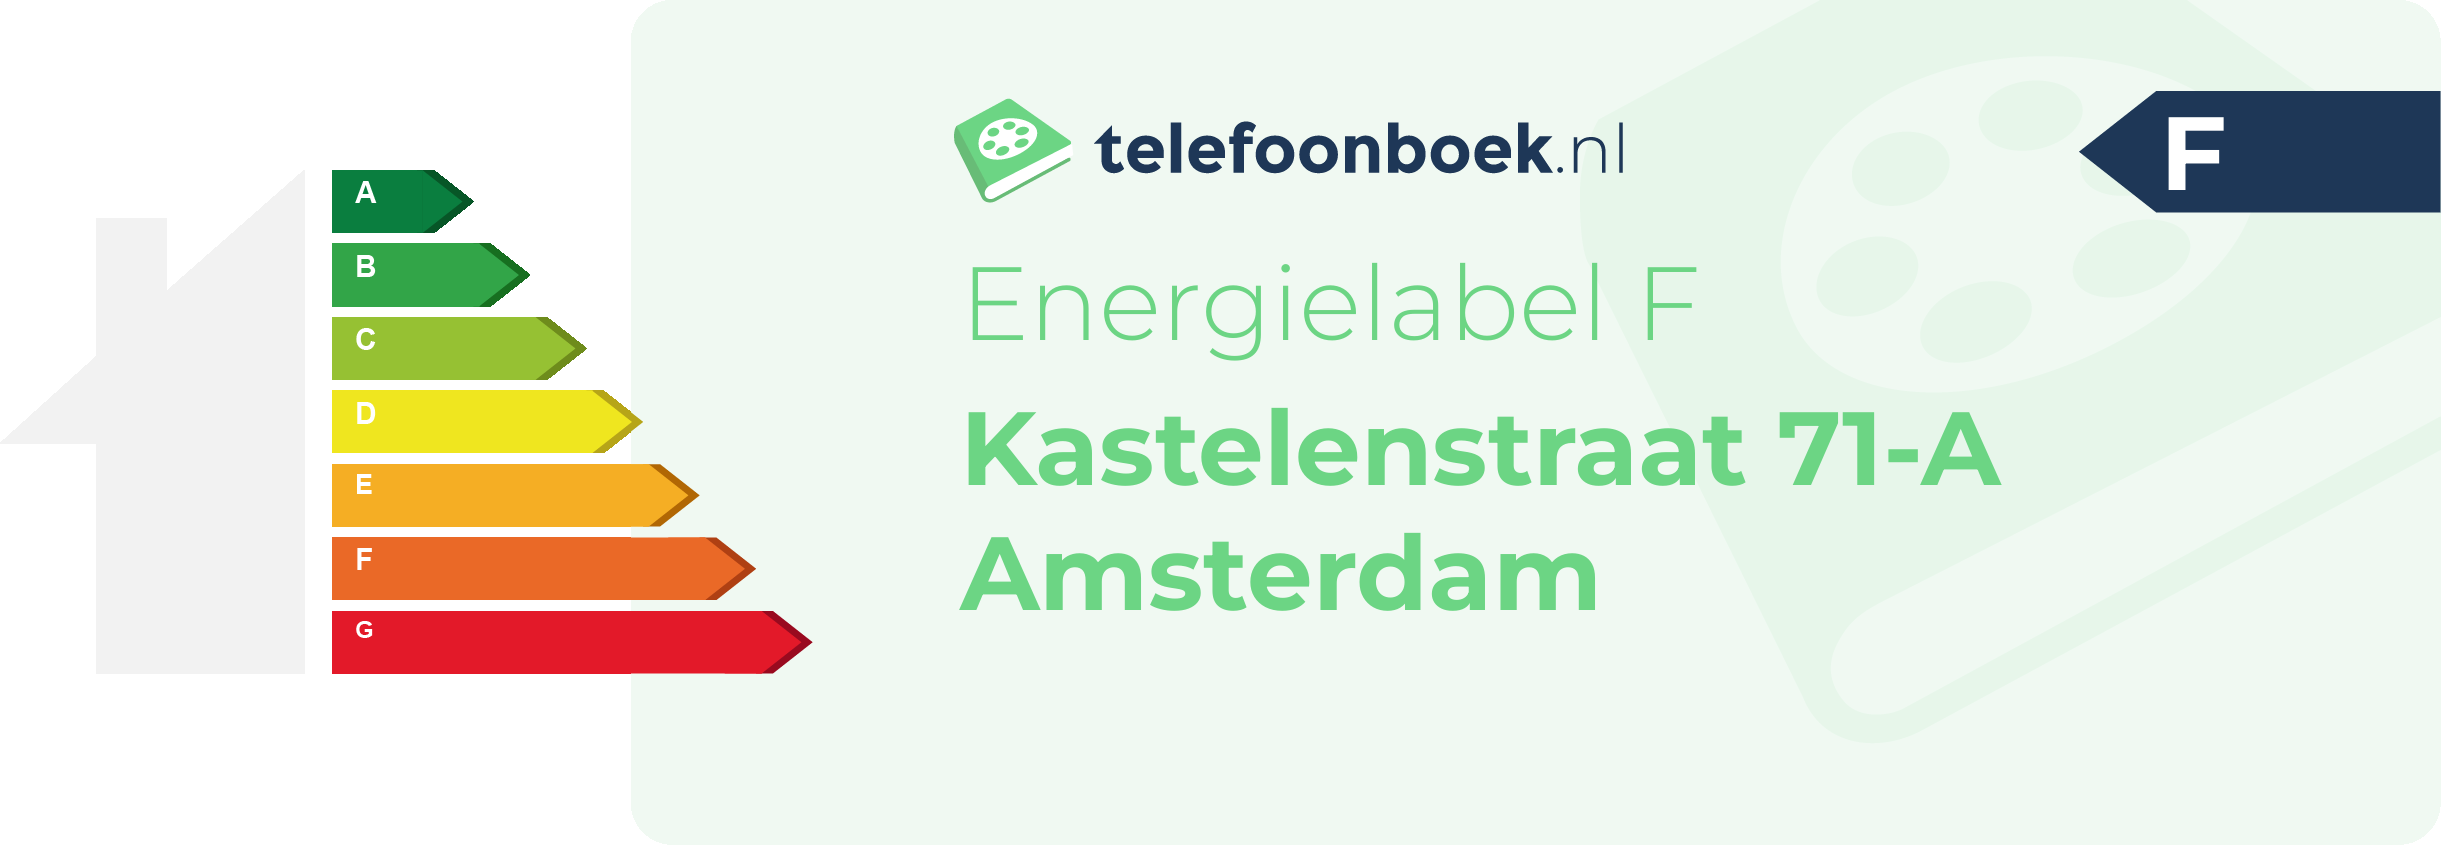 Energielabel Kastelenstraat 71-A Amsterdam